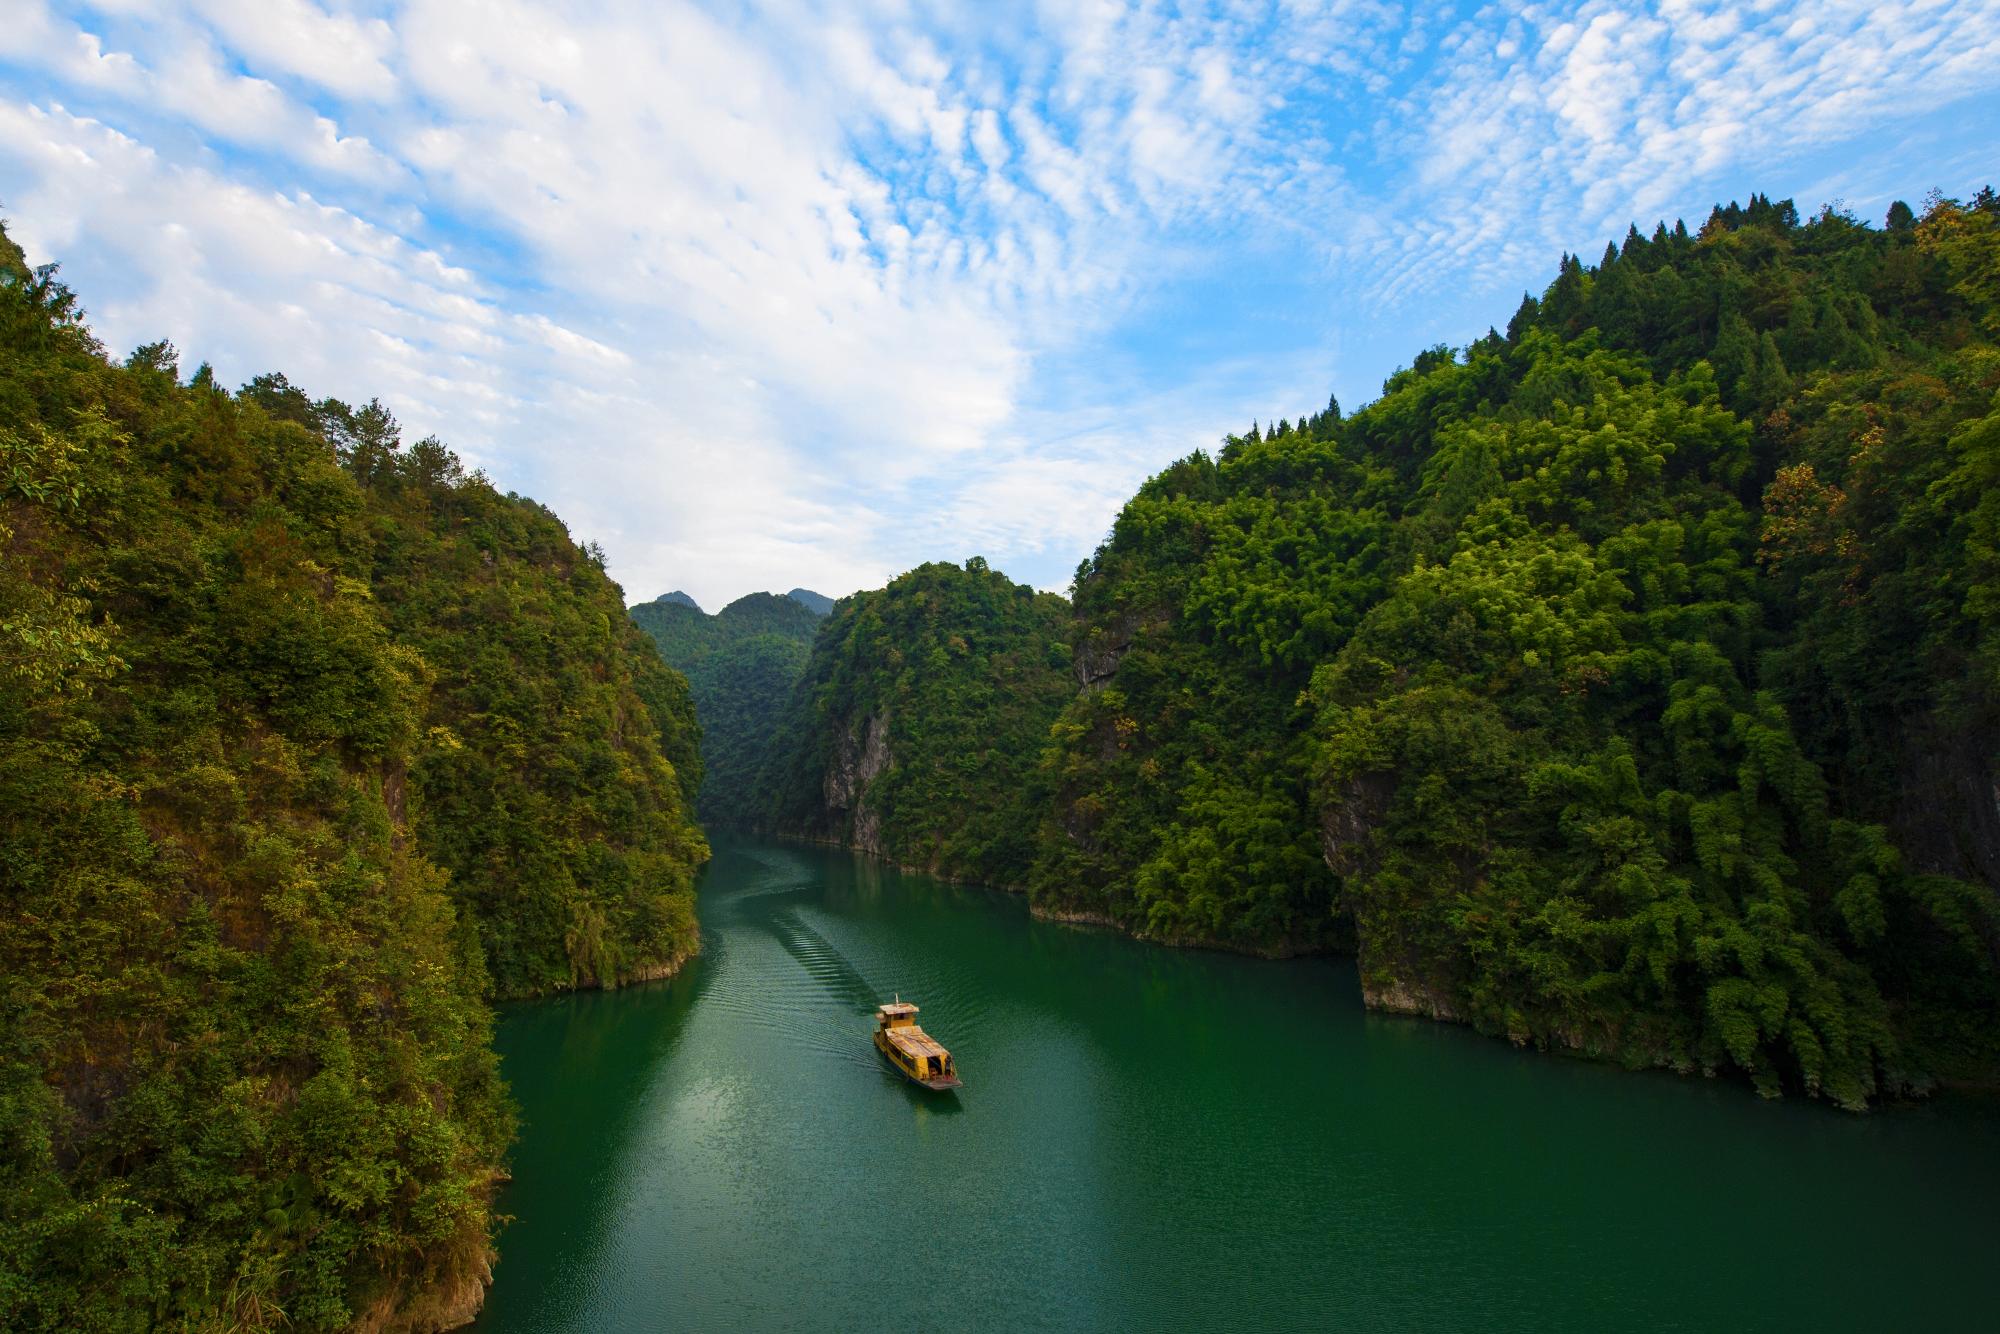 黔江峡谷公园图片图片